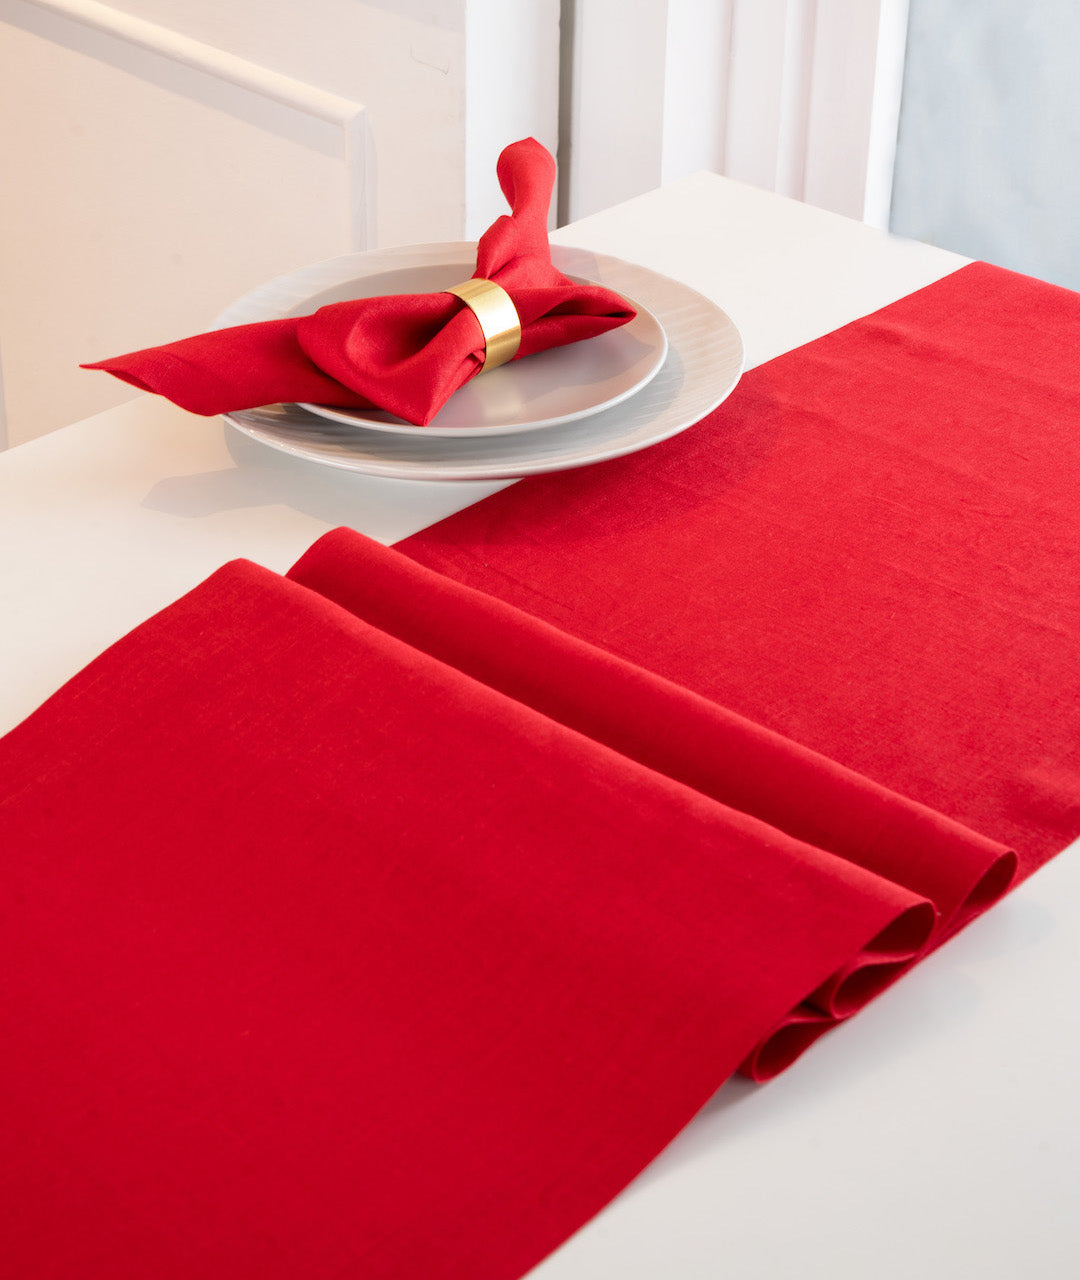 Light Red Linen Table Runner - Hemmed